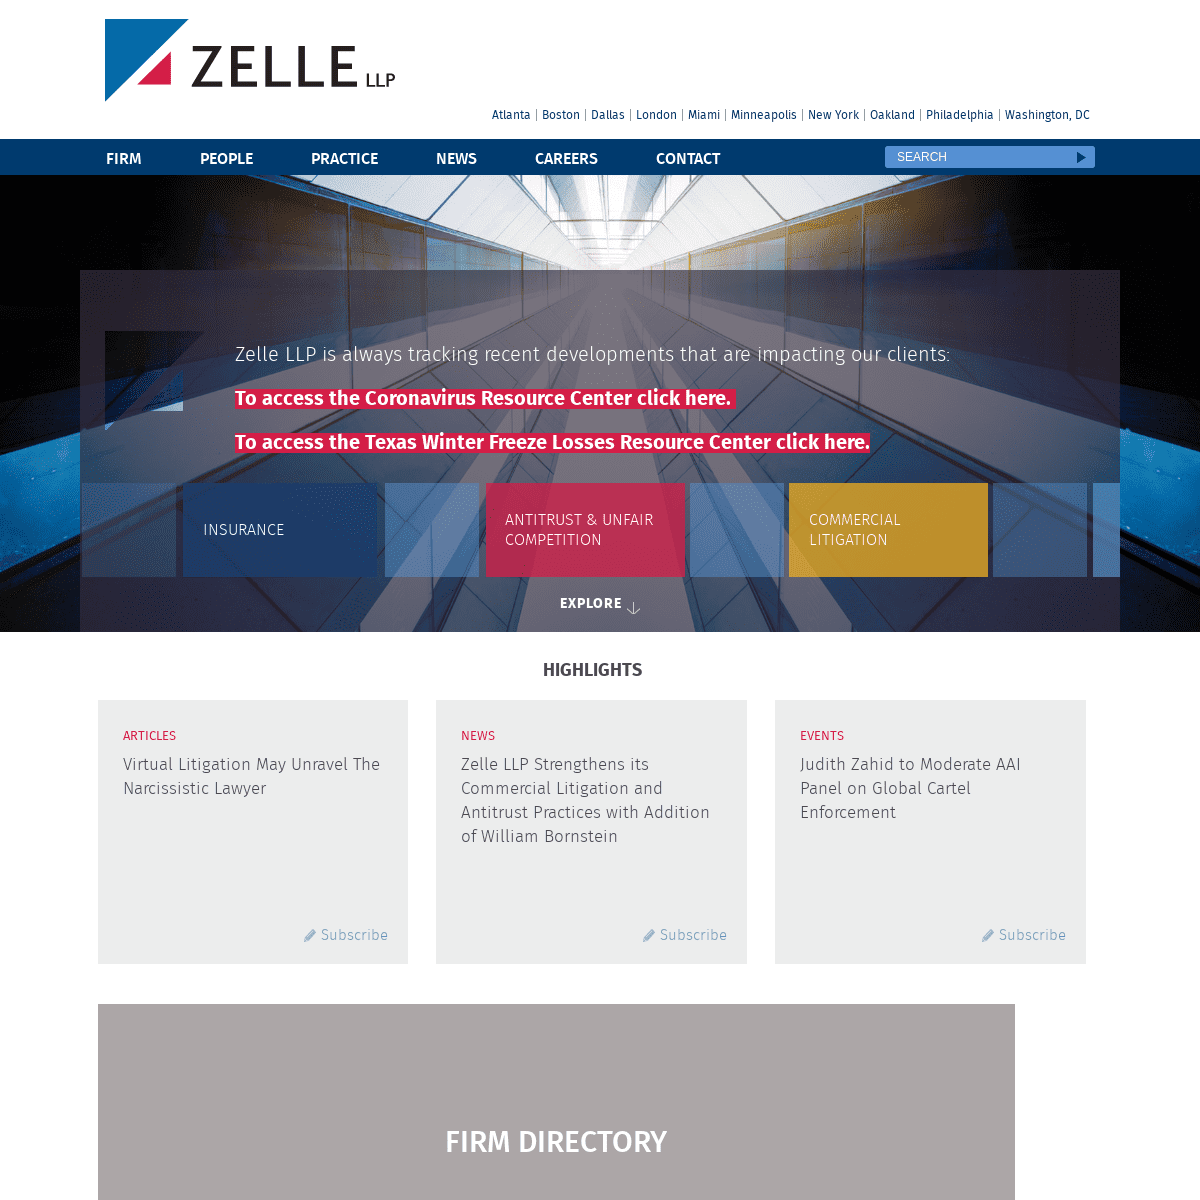 A complete backup of https://zelle.com